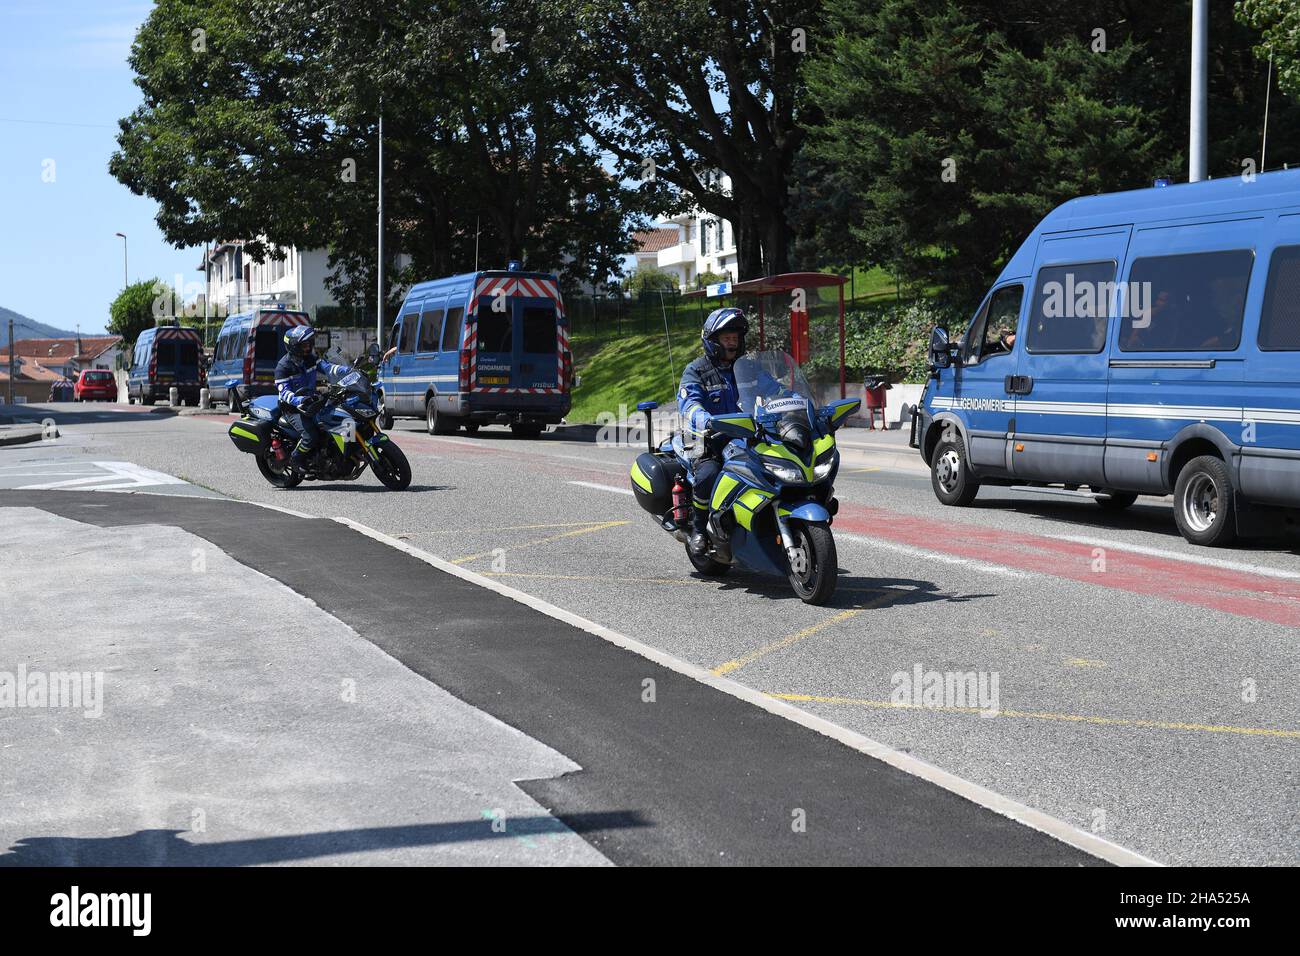 Motos et camionnettes de police françaises pendant le sommet de G7 (Credit image: © Julen Pascual Gonzalez) Banque D'Images